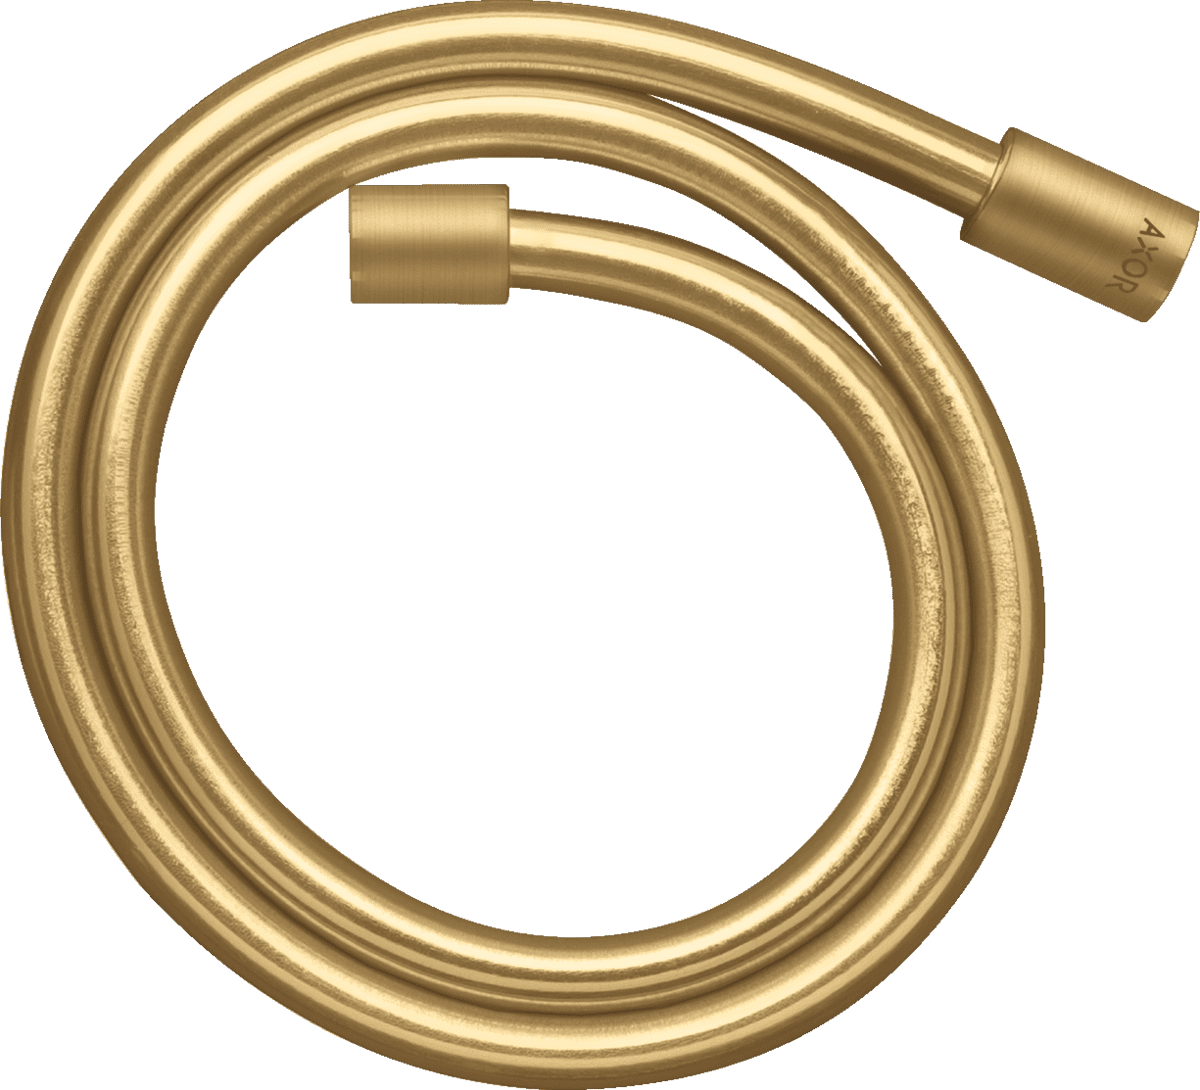 HANSGROHE AXOR Starck Metal görünümlü duş hortumu 1.25 m #28282250 - Mat Altın Optik resmi